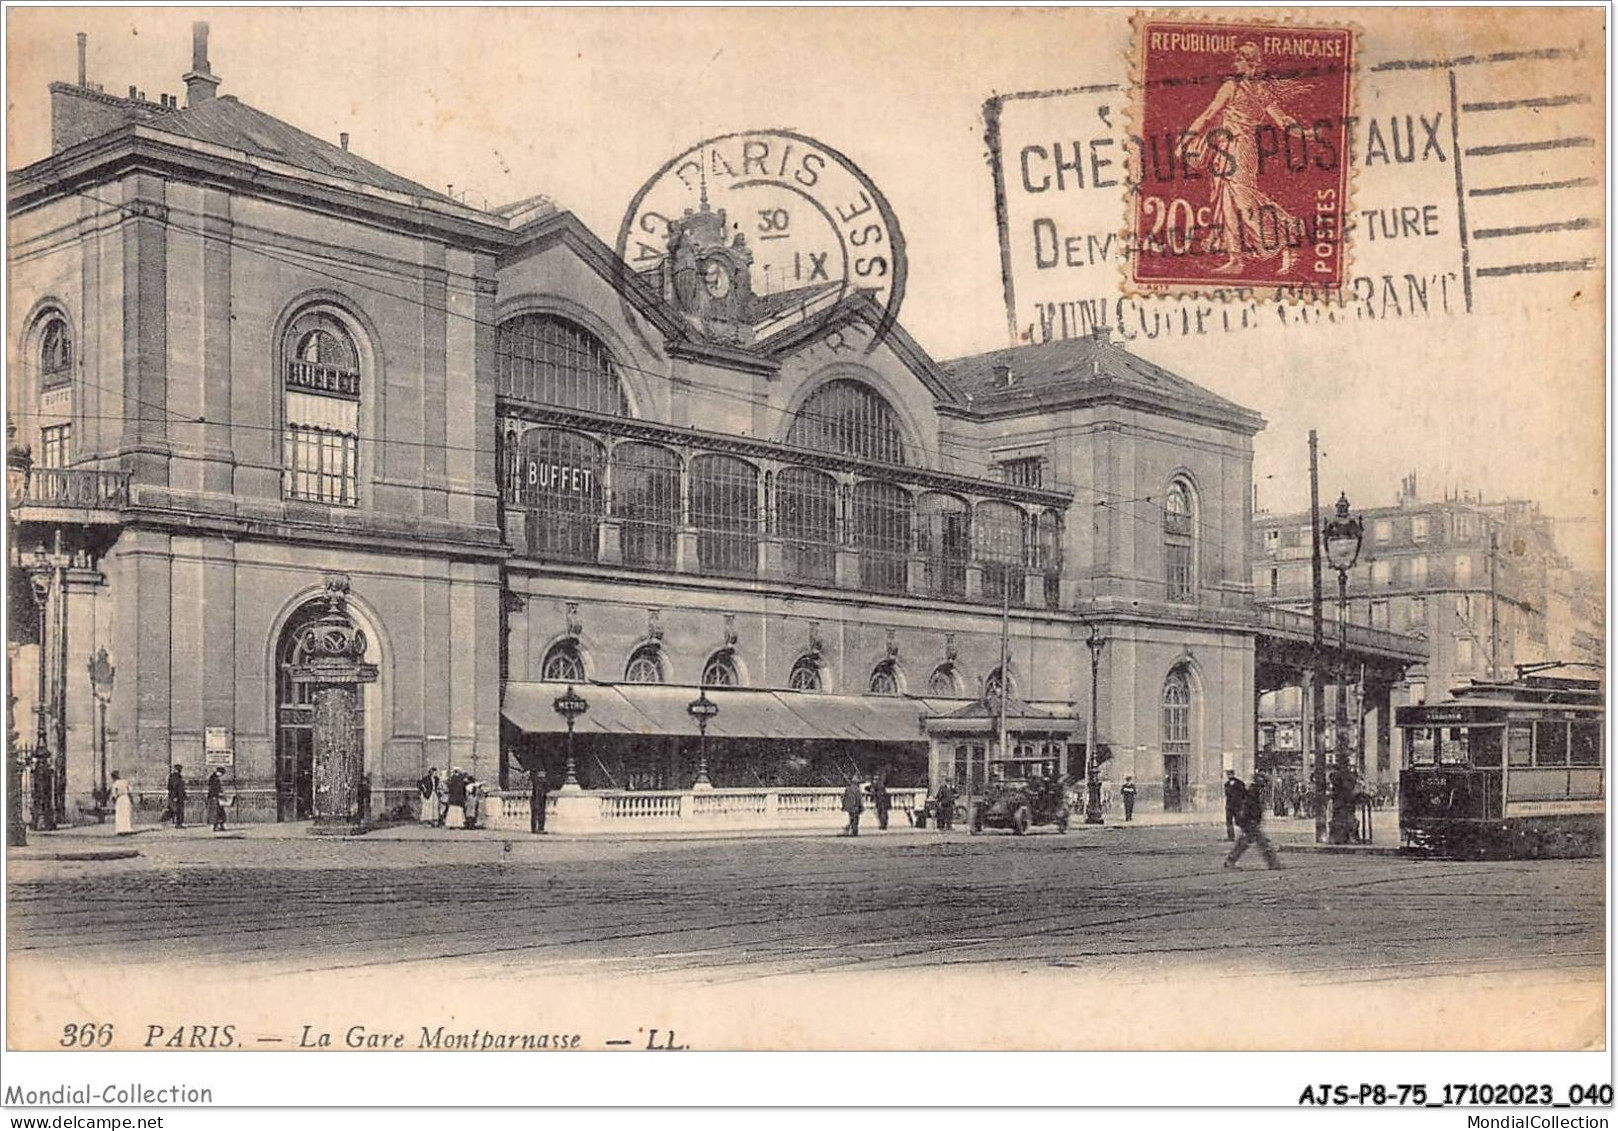 AJSP8-75-0730 - PARIS - La Gare Montparnasse - Pariser Métro, Bahnhöfe